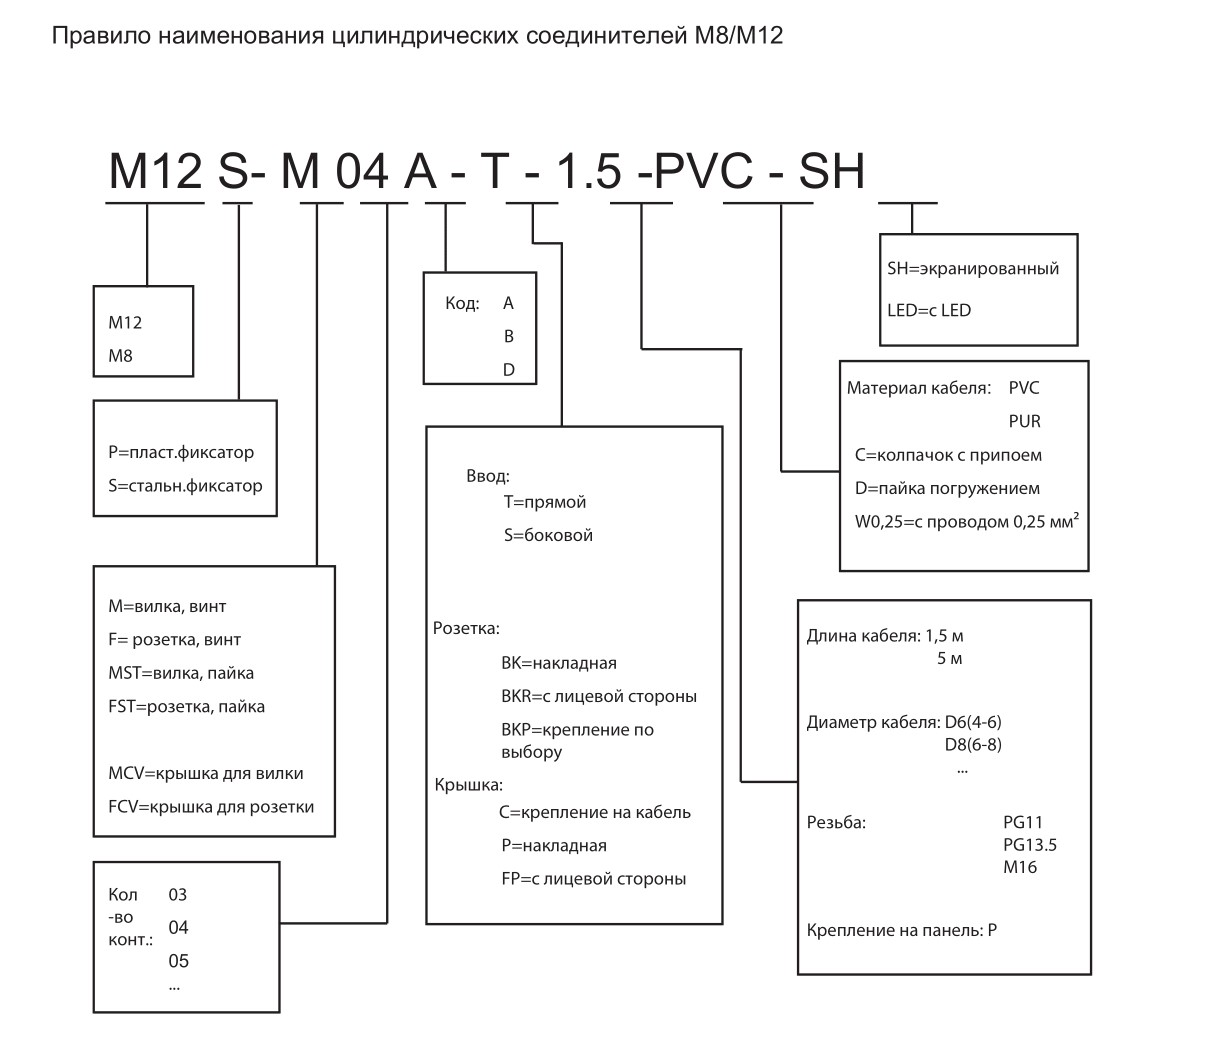 Цилиндрический соединитель-розетка/RJ45 (каб. сборка) M12-F04D-T/RJ45P-T-1.5-PUR-PFN 1630040024004: Структура обозначения